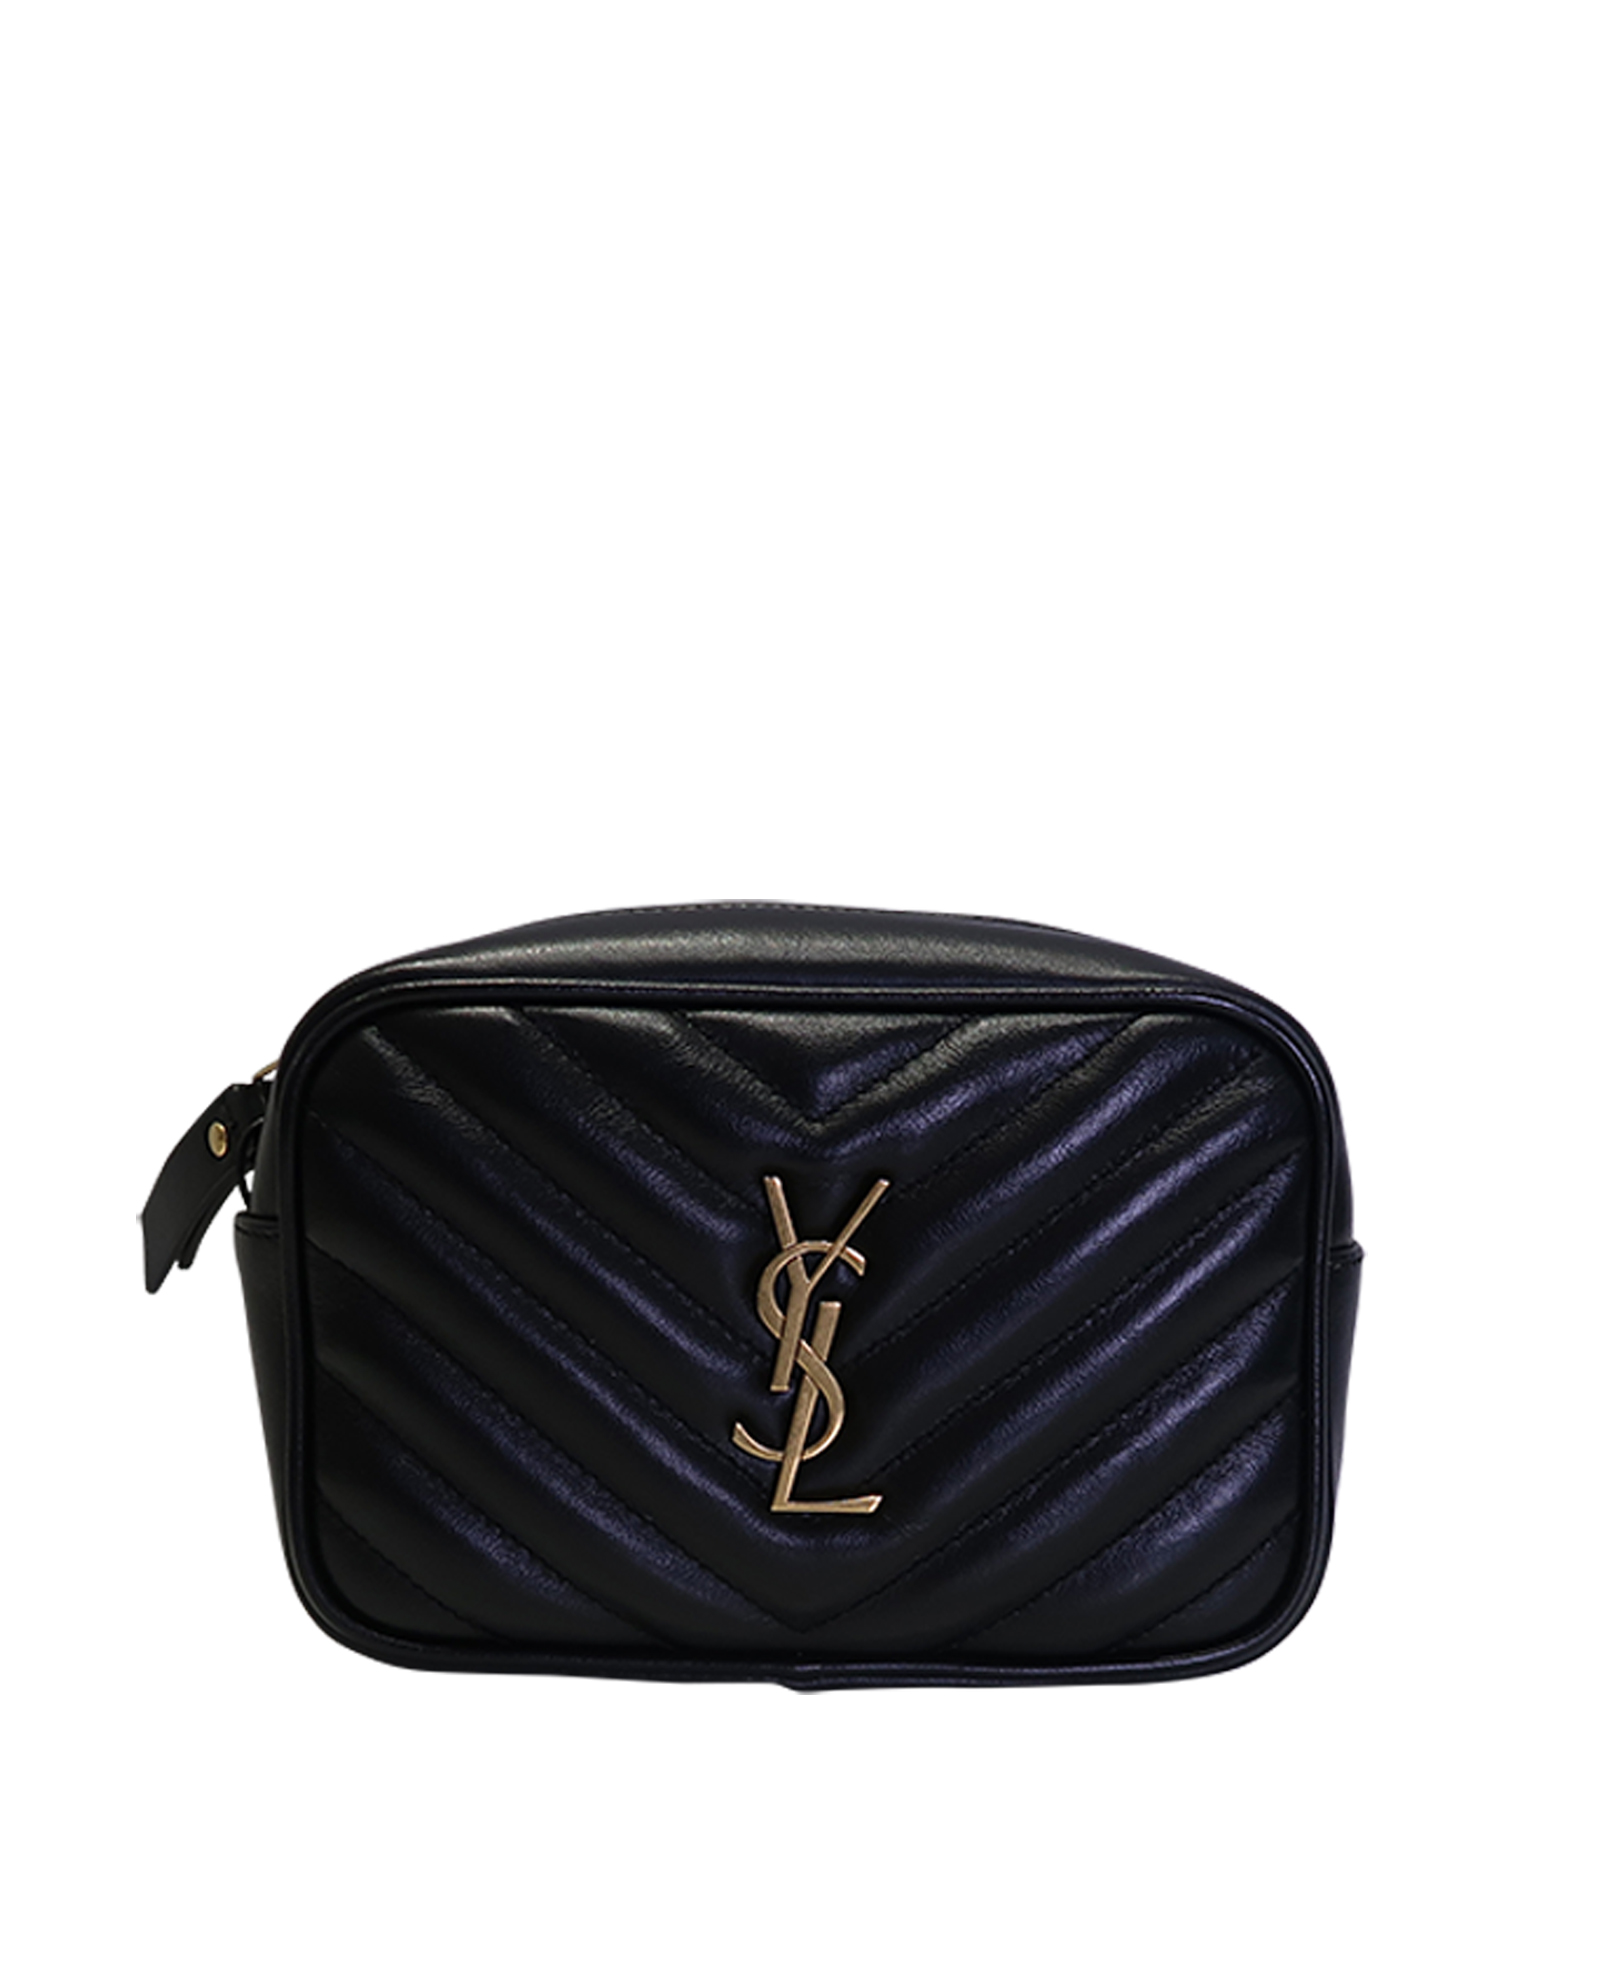 Saint Laurent 'Lou' leather belt bag, Women's Bags